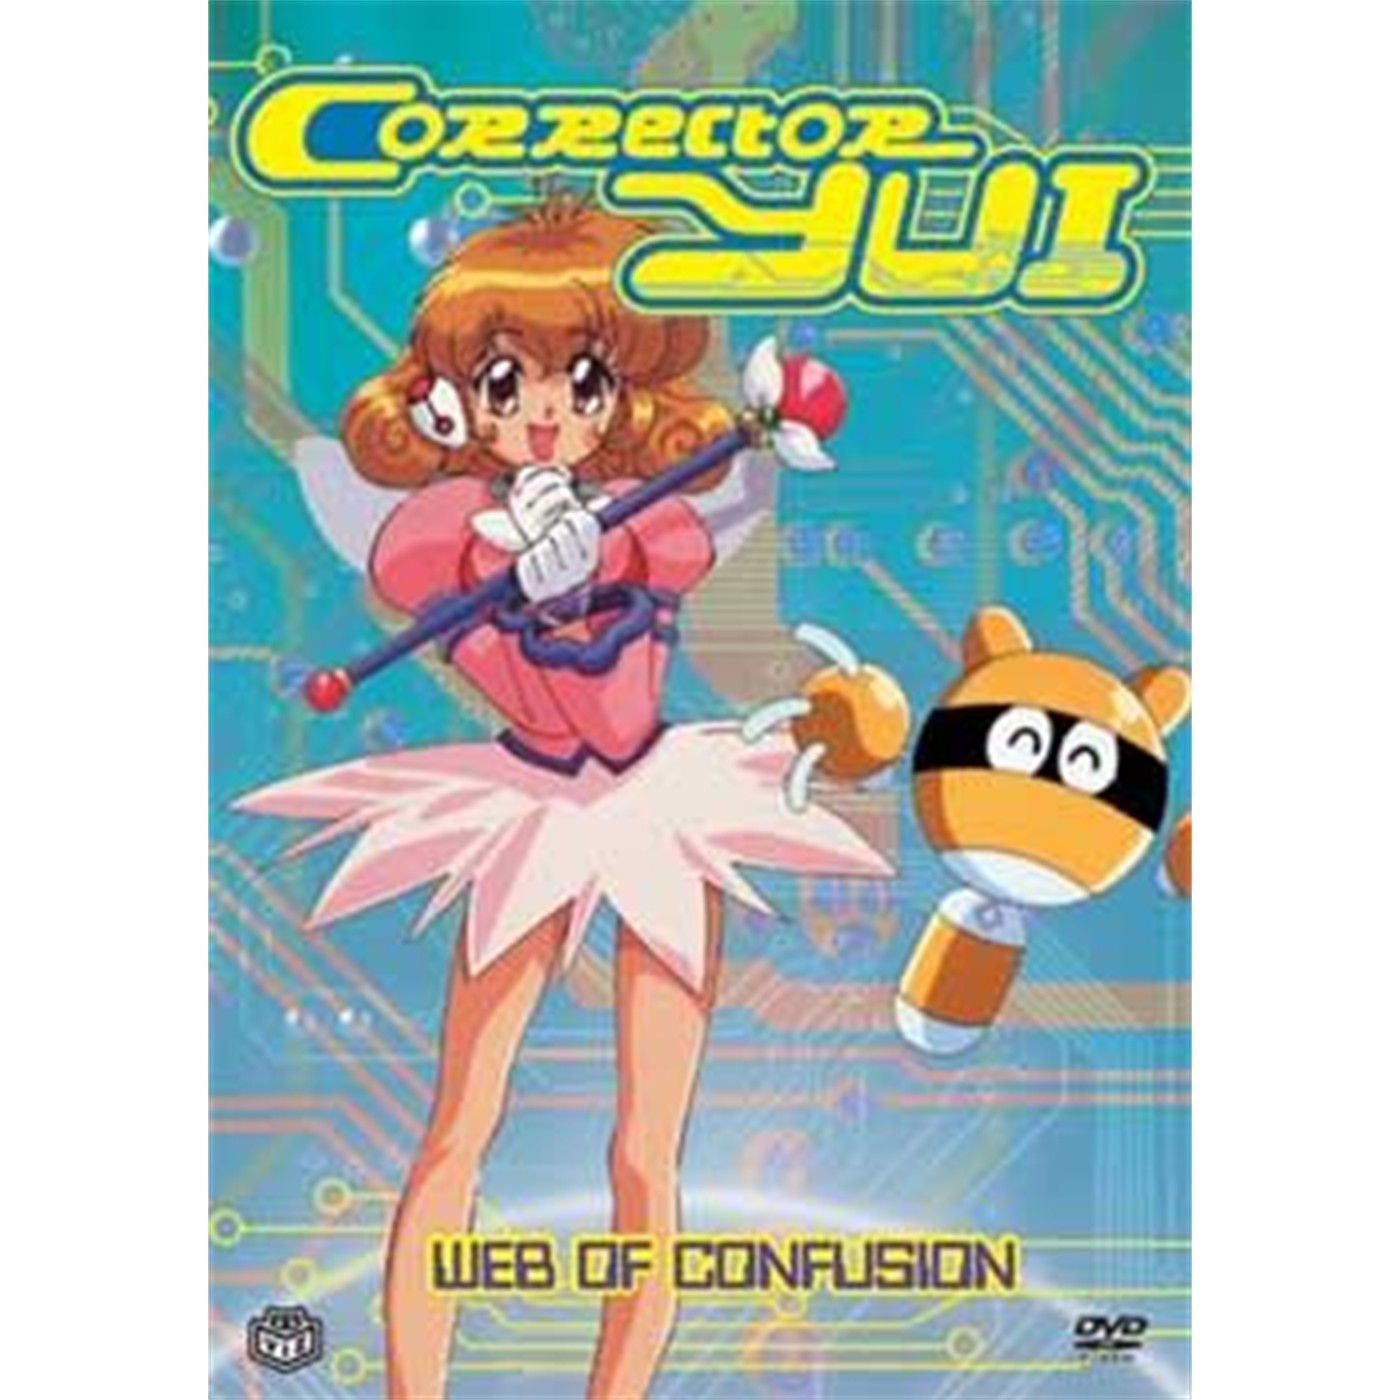 Corrector Yui, DVD Vol. 2 - Web of Confusion